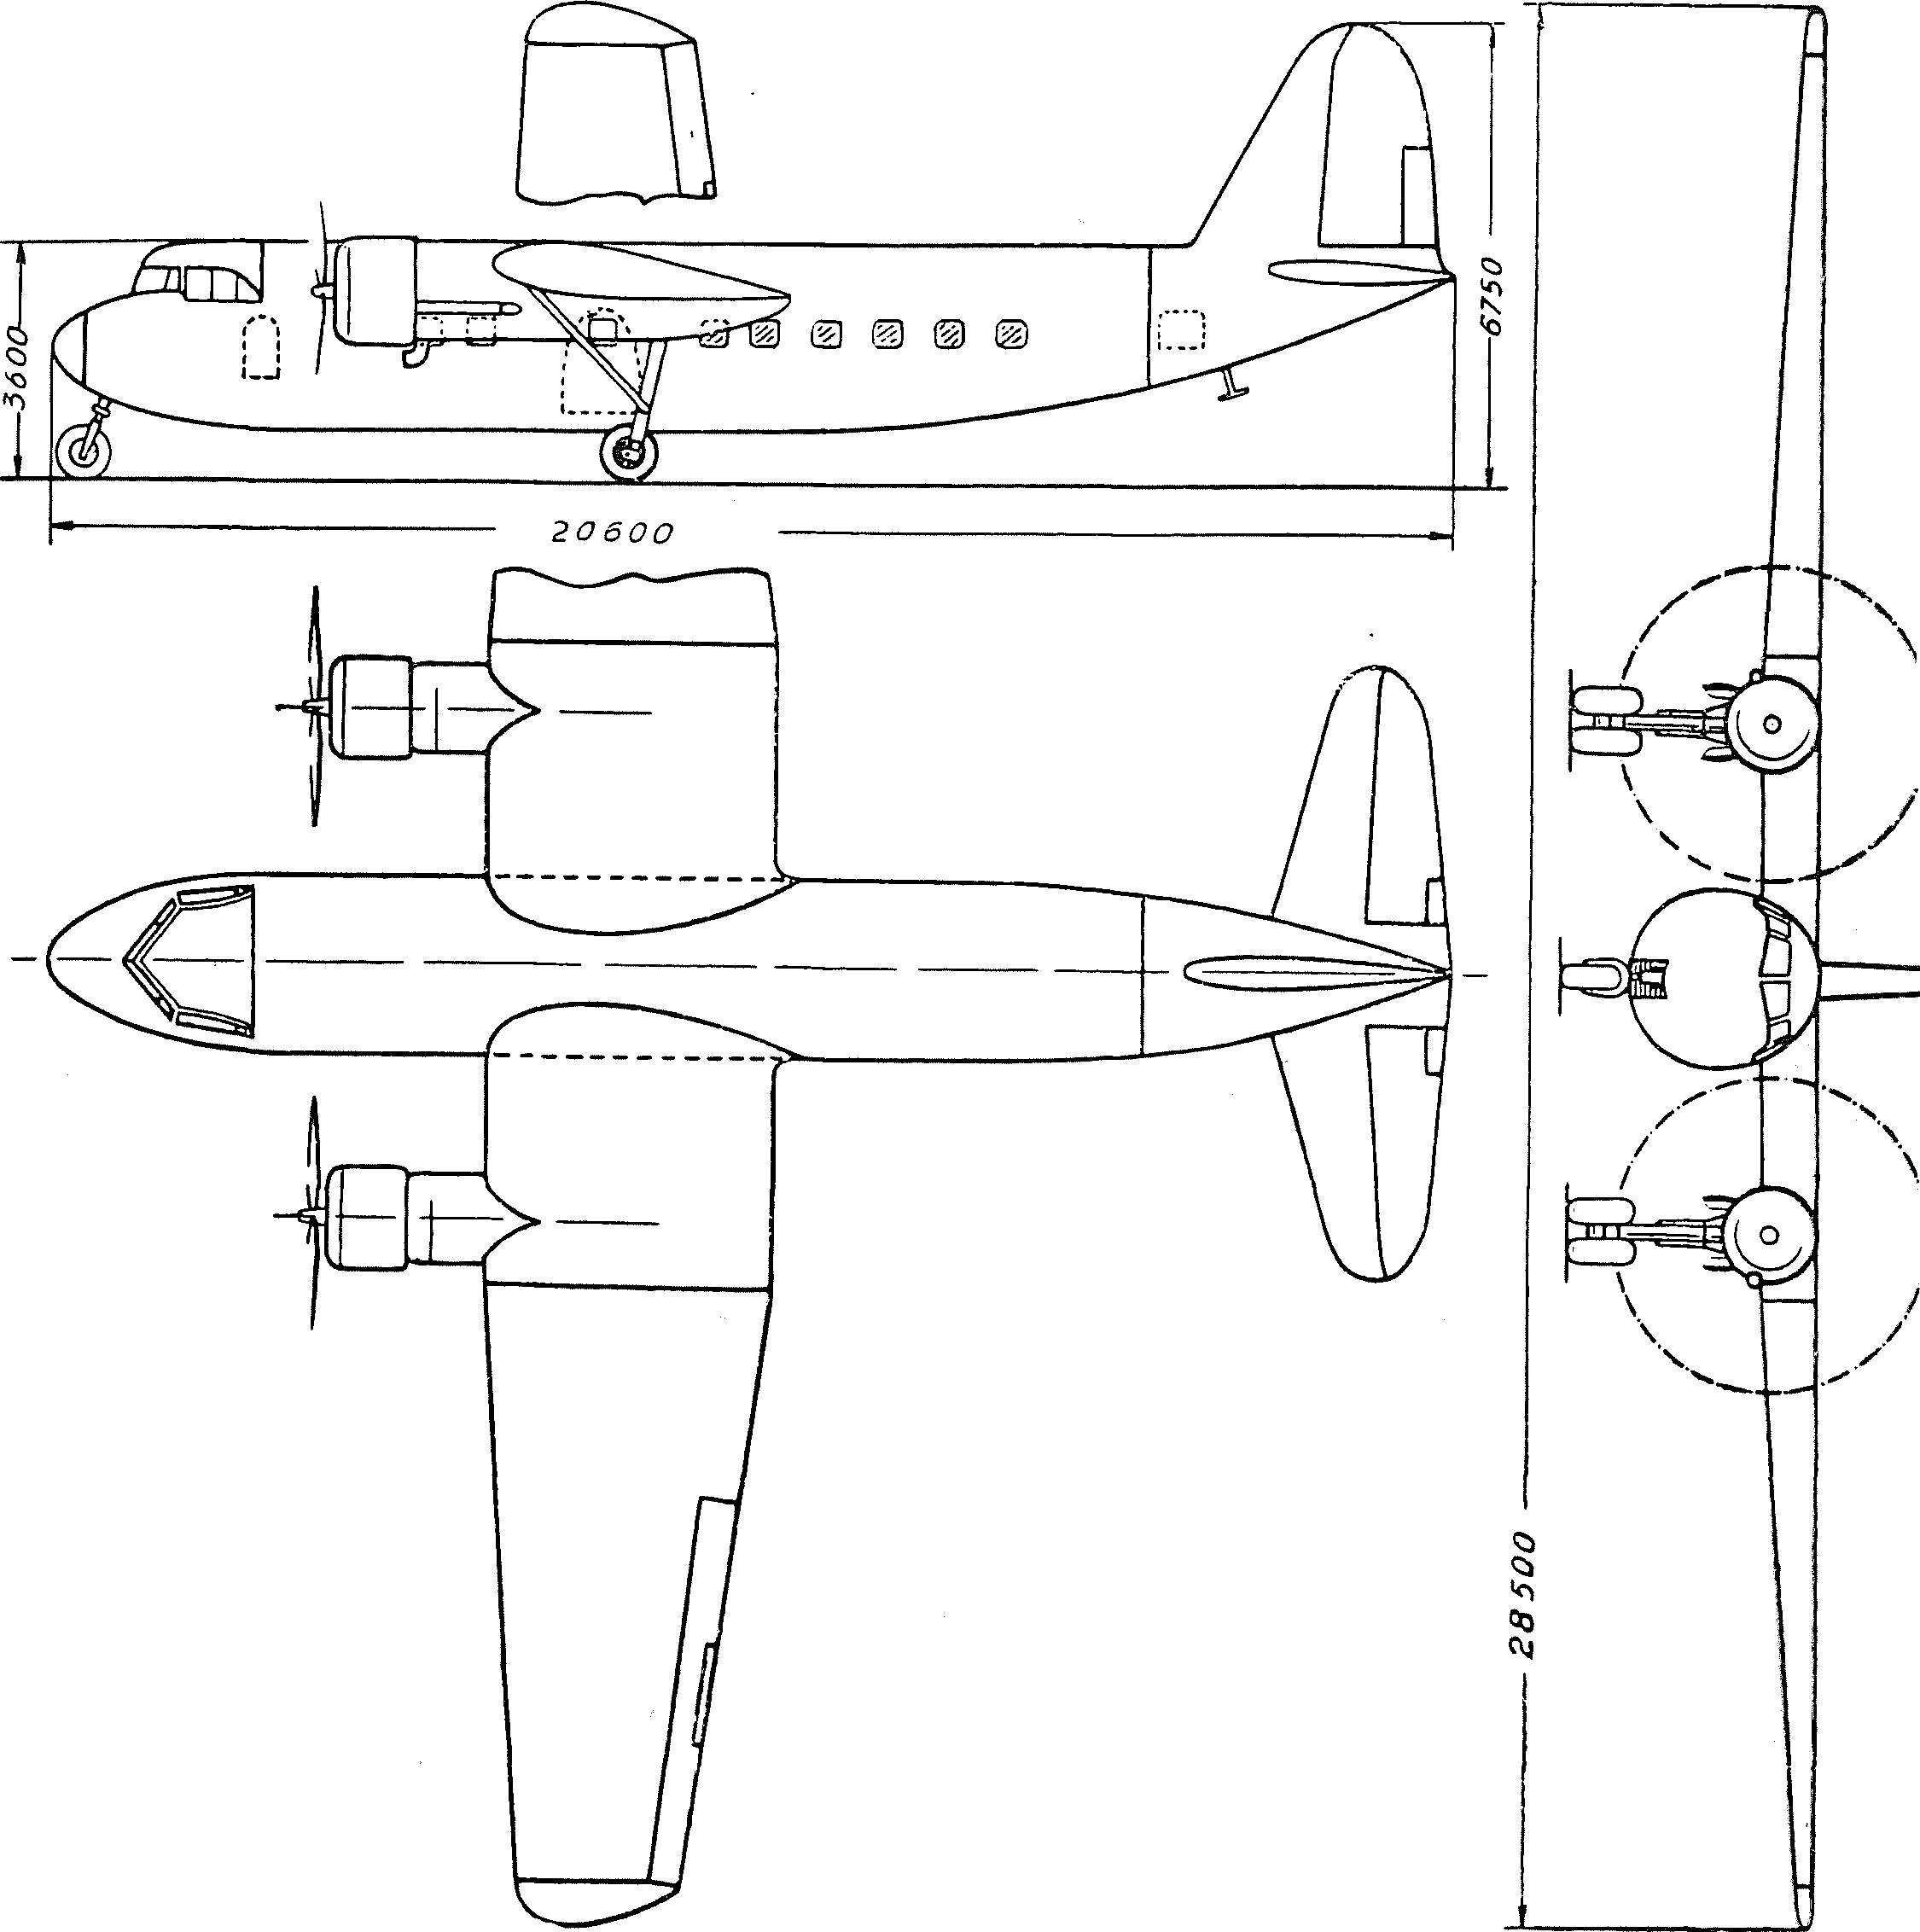 Luftfahrt und Luftwaffe im Zweiten Weltkrieg 1944